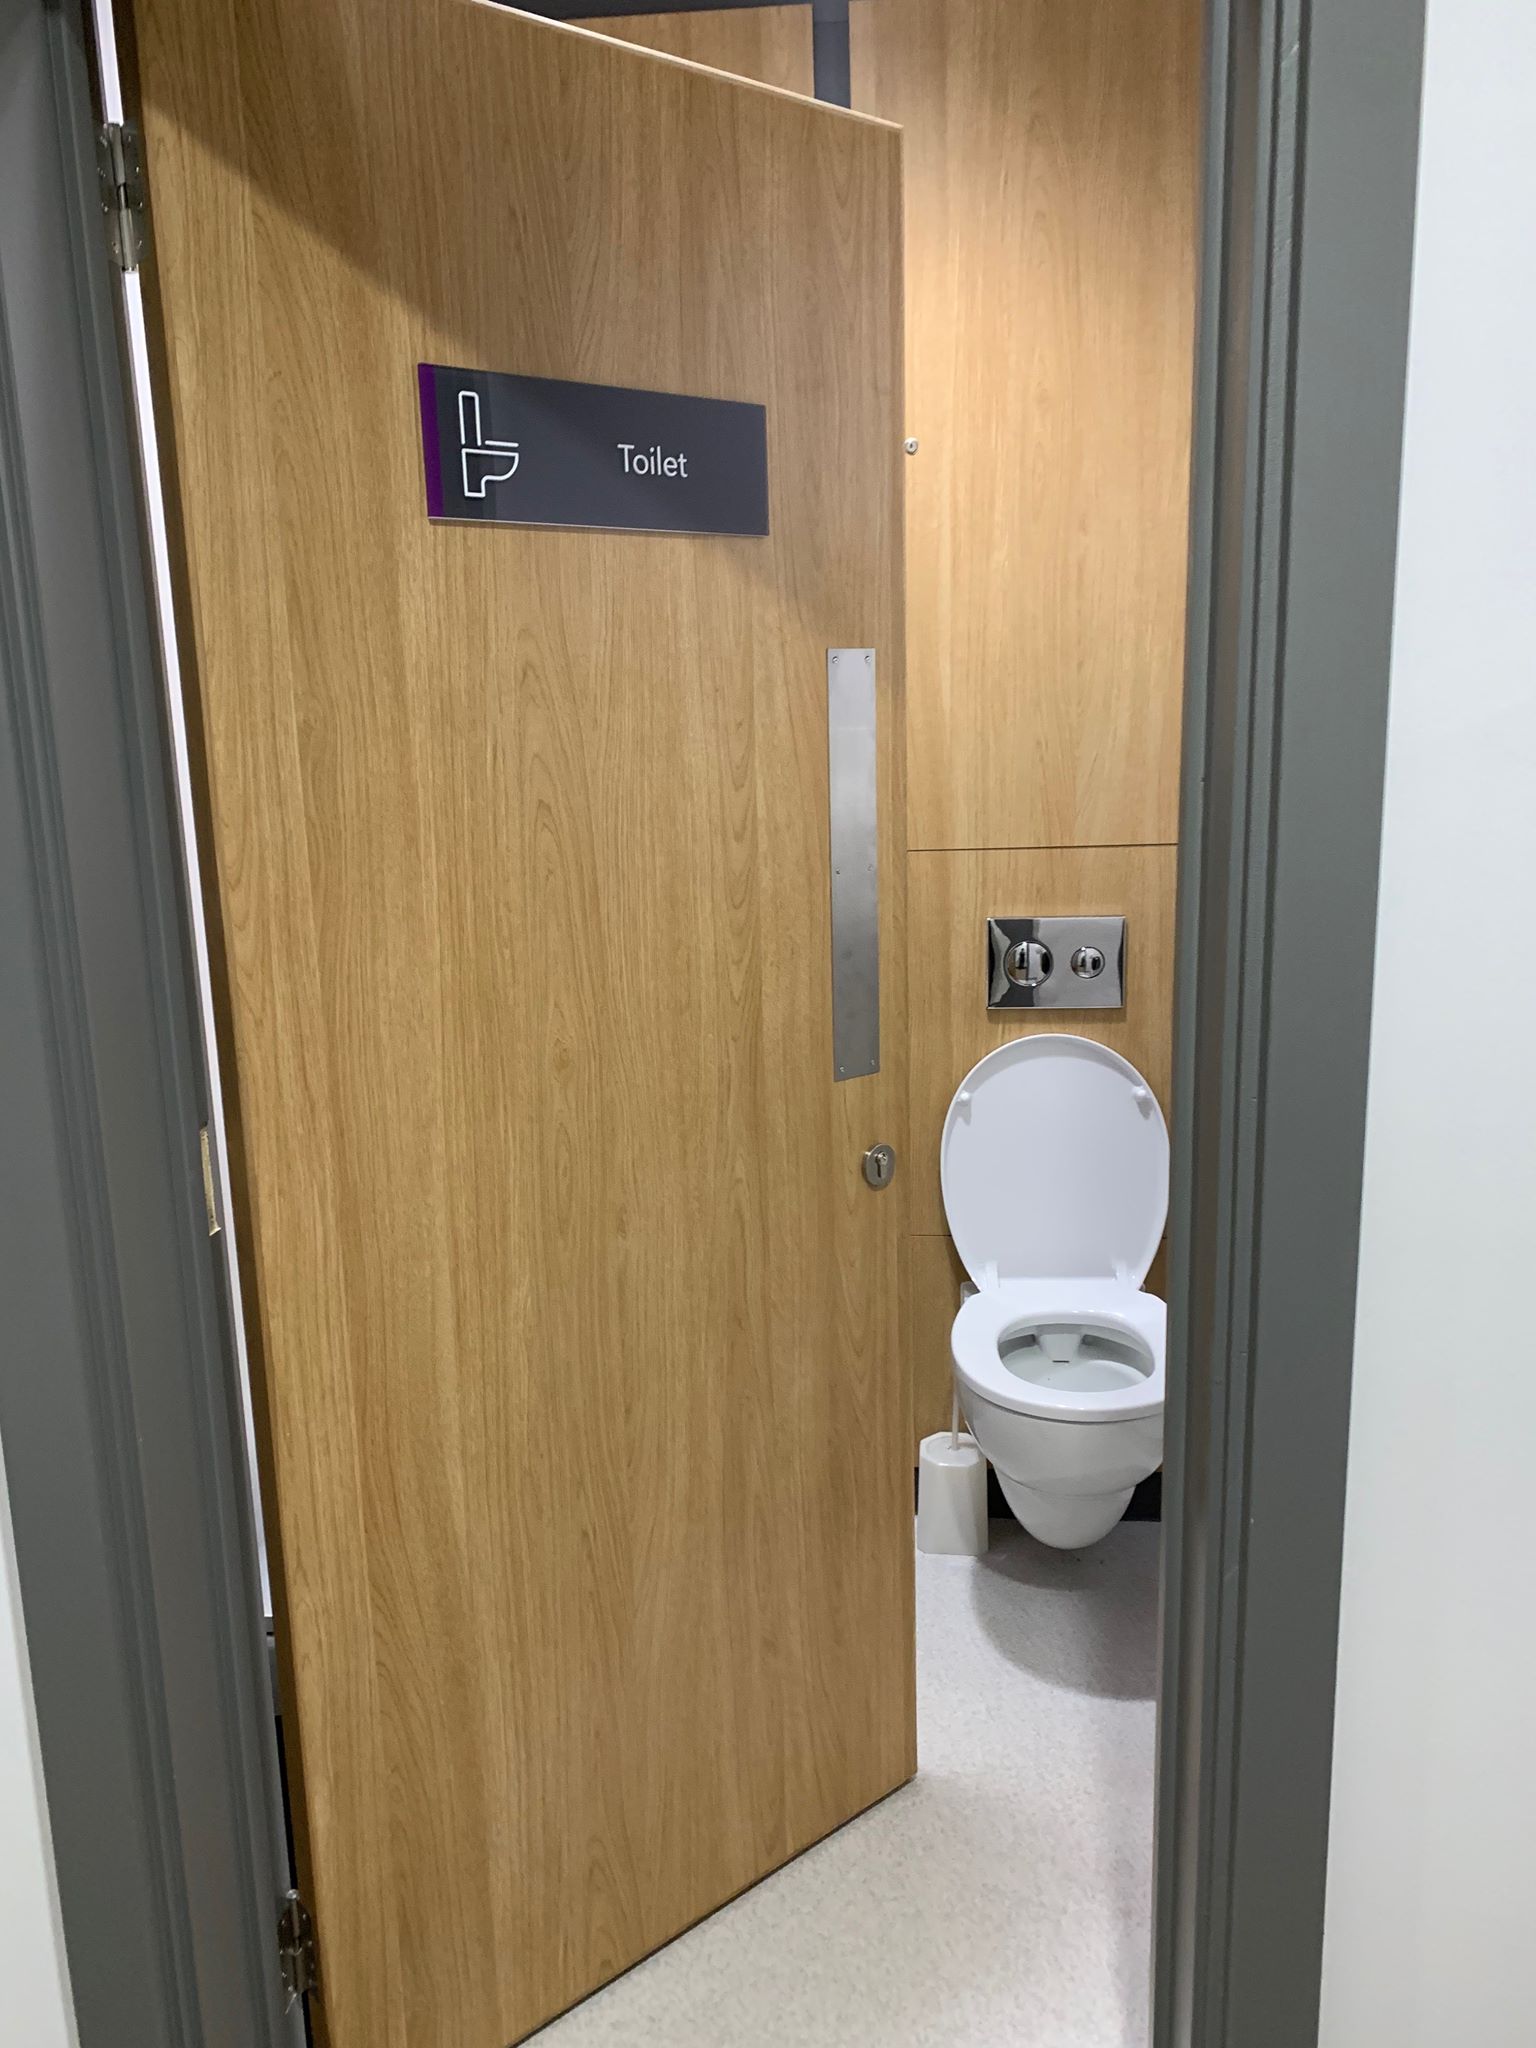 Gender neutral toilet